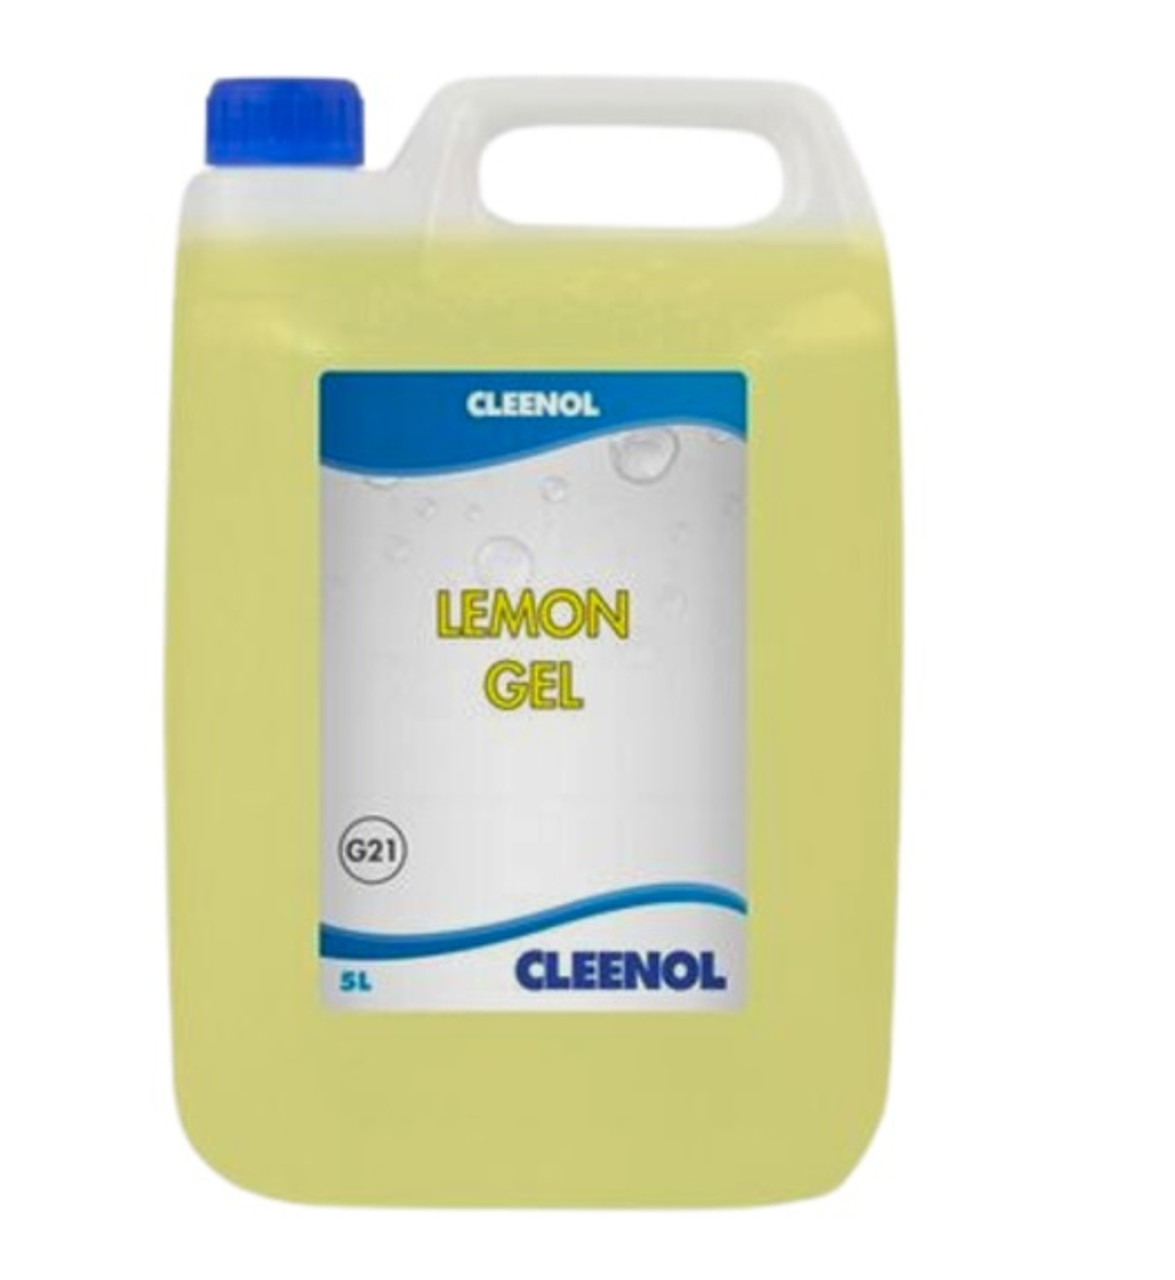 Cleenol Lemon Gel Floor Cleaner - 5L